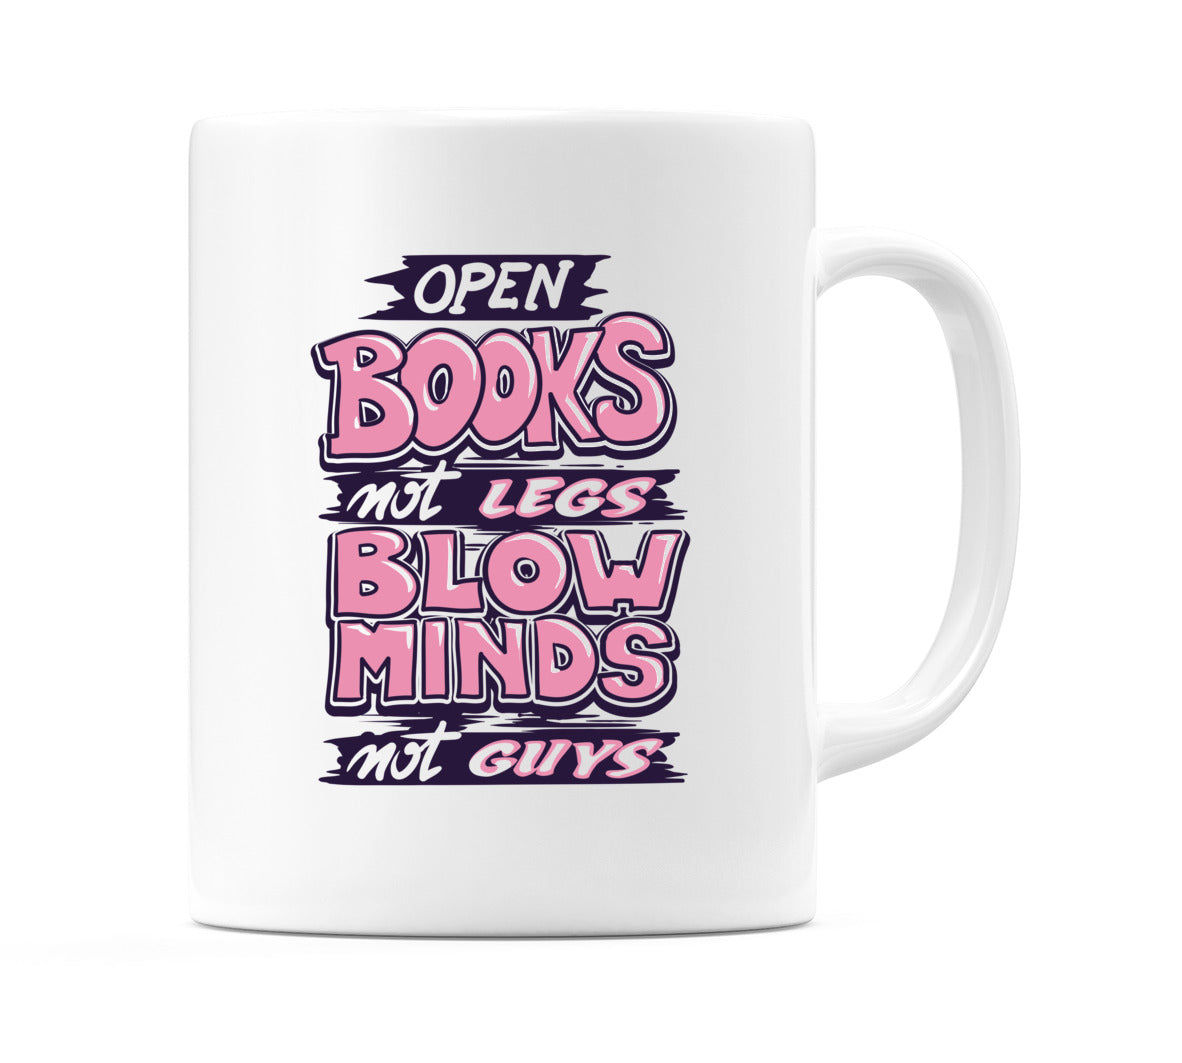 OPEN BOOKS not LEGS BLOW MINDS not GUYS Mug